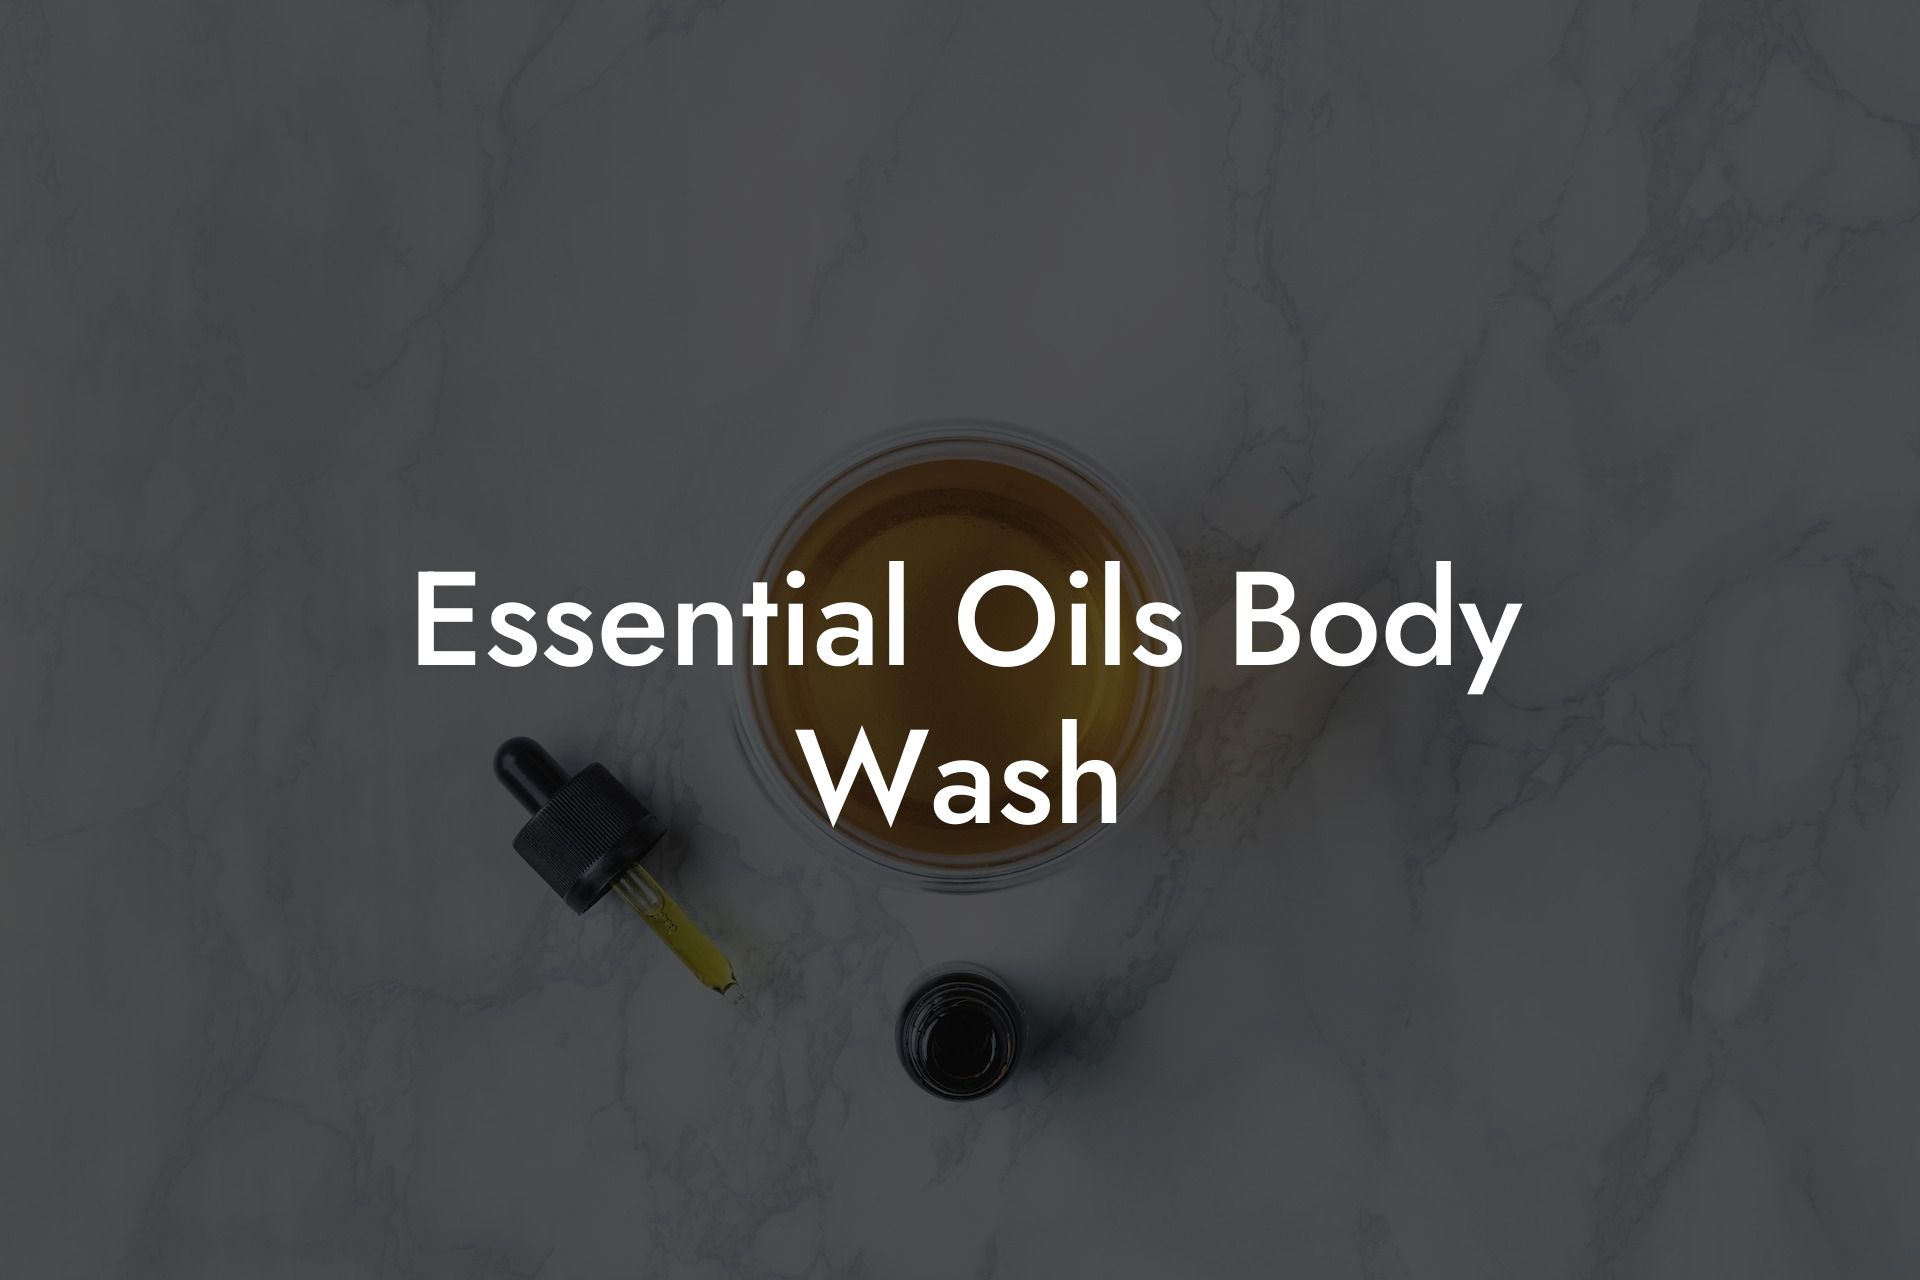 Essential Oils Body Wash